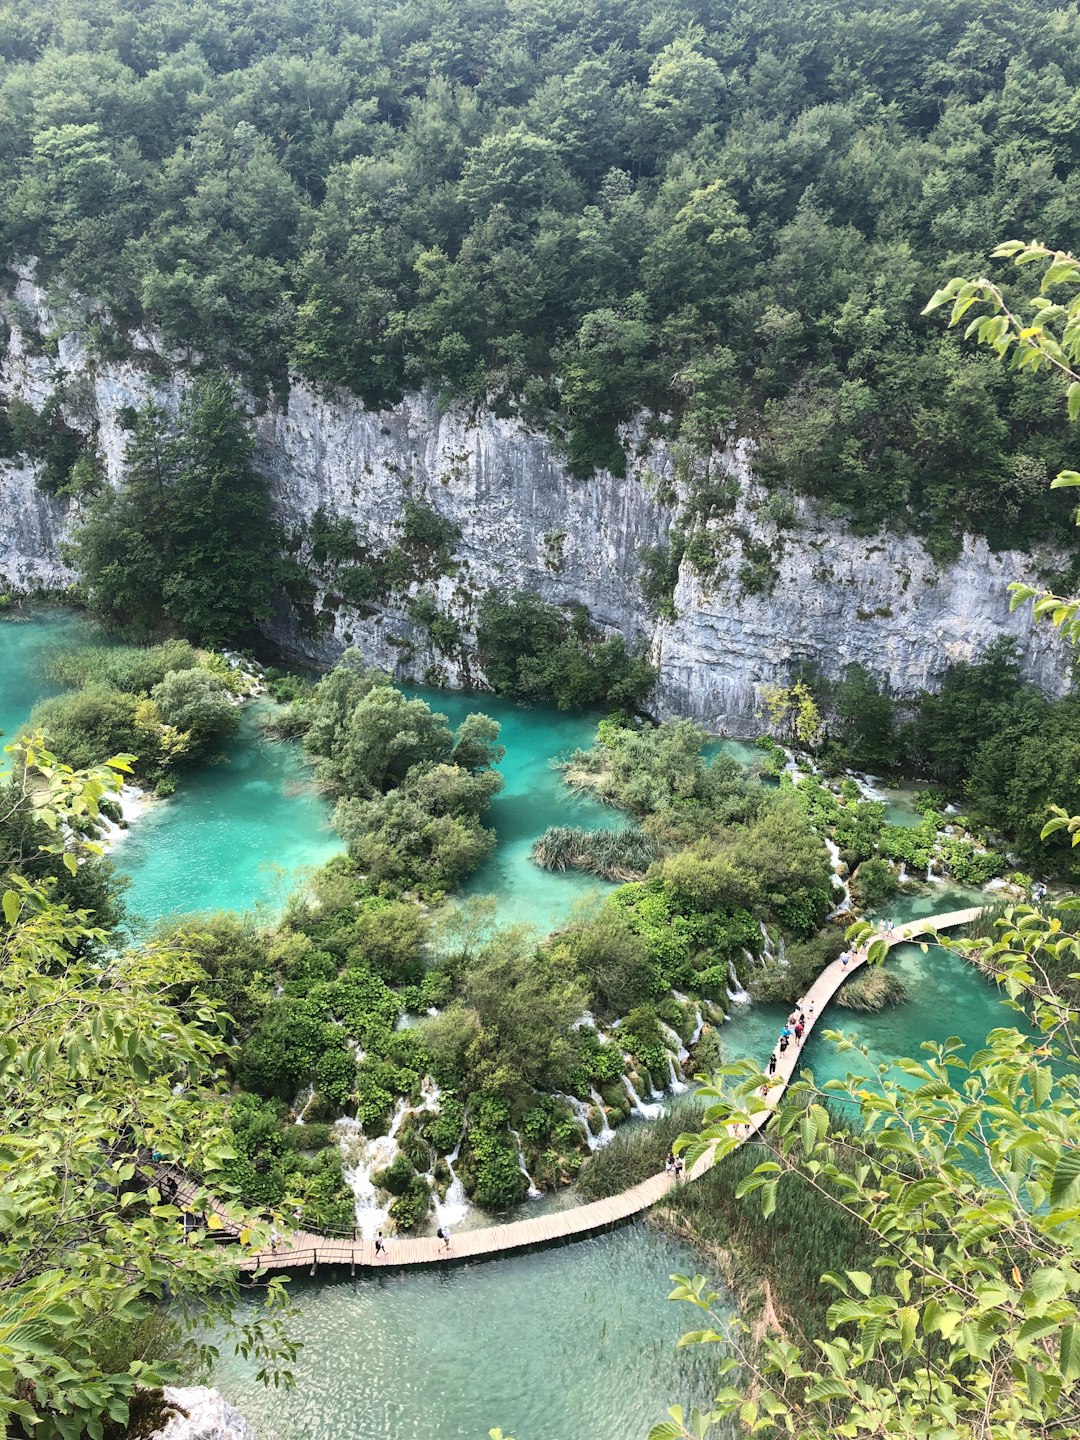 Nature reserve photo spot Plitvice Plitvice Lakes National Park